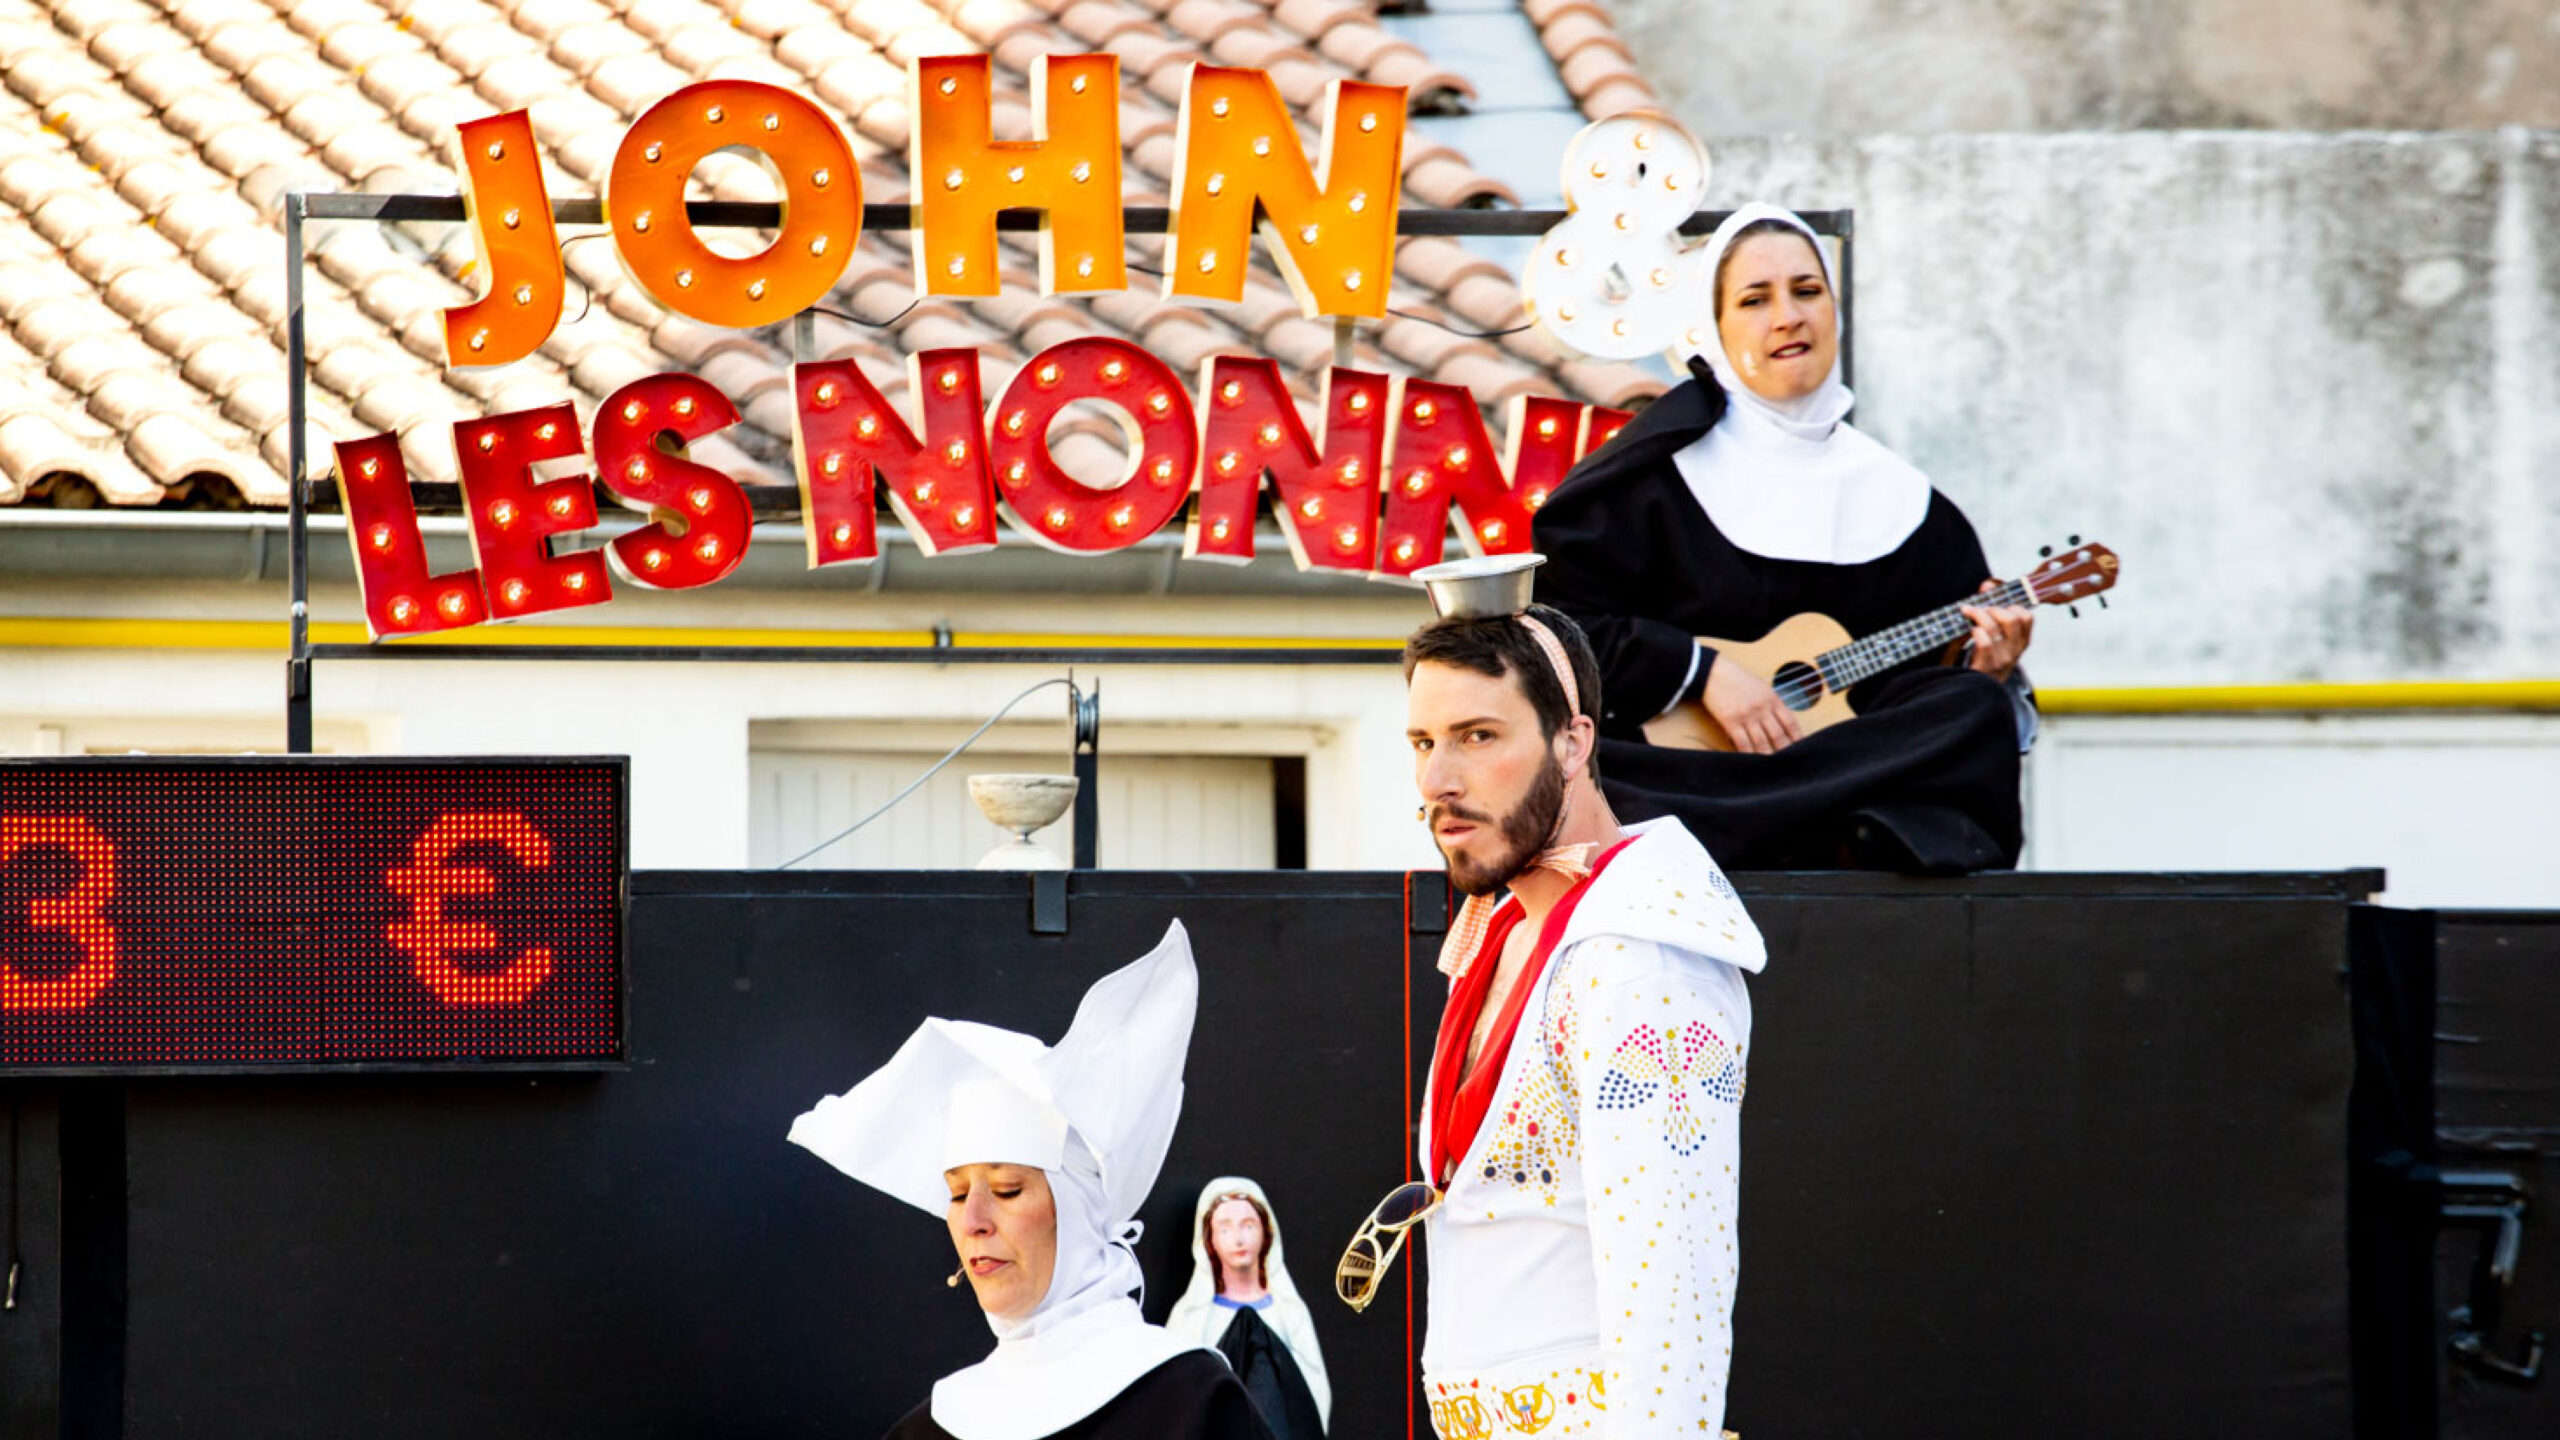 Cliquez ici pour en savoir plus sur John & Les nonnes